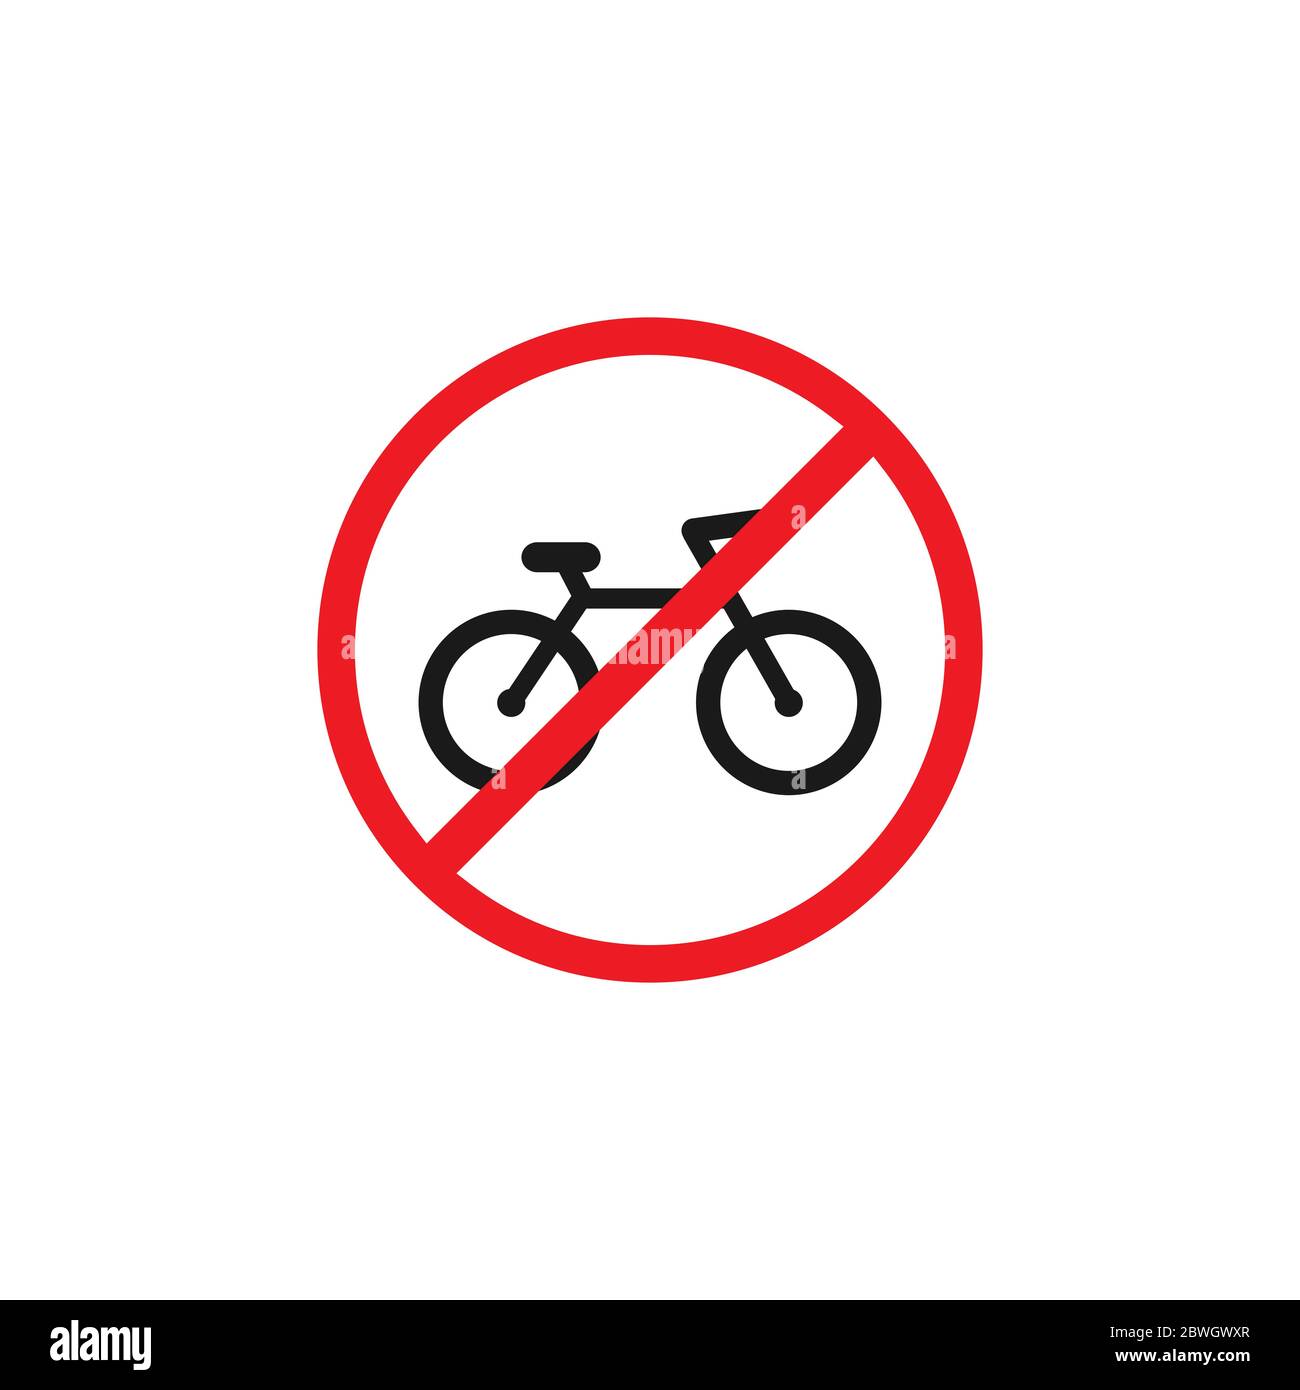 Bicicleta negra en círculo rojo icono cruzado. No hay señal de bicicleta  aislada en blanco. Ilustración vectorial. Símbolo de transporte prohibido,  no permitido Imagen Vector de stock - Alamy